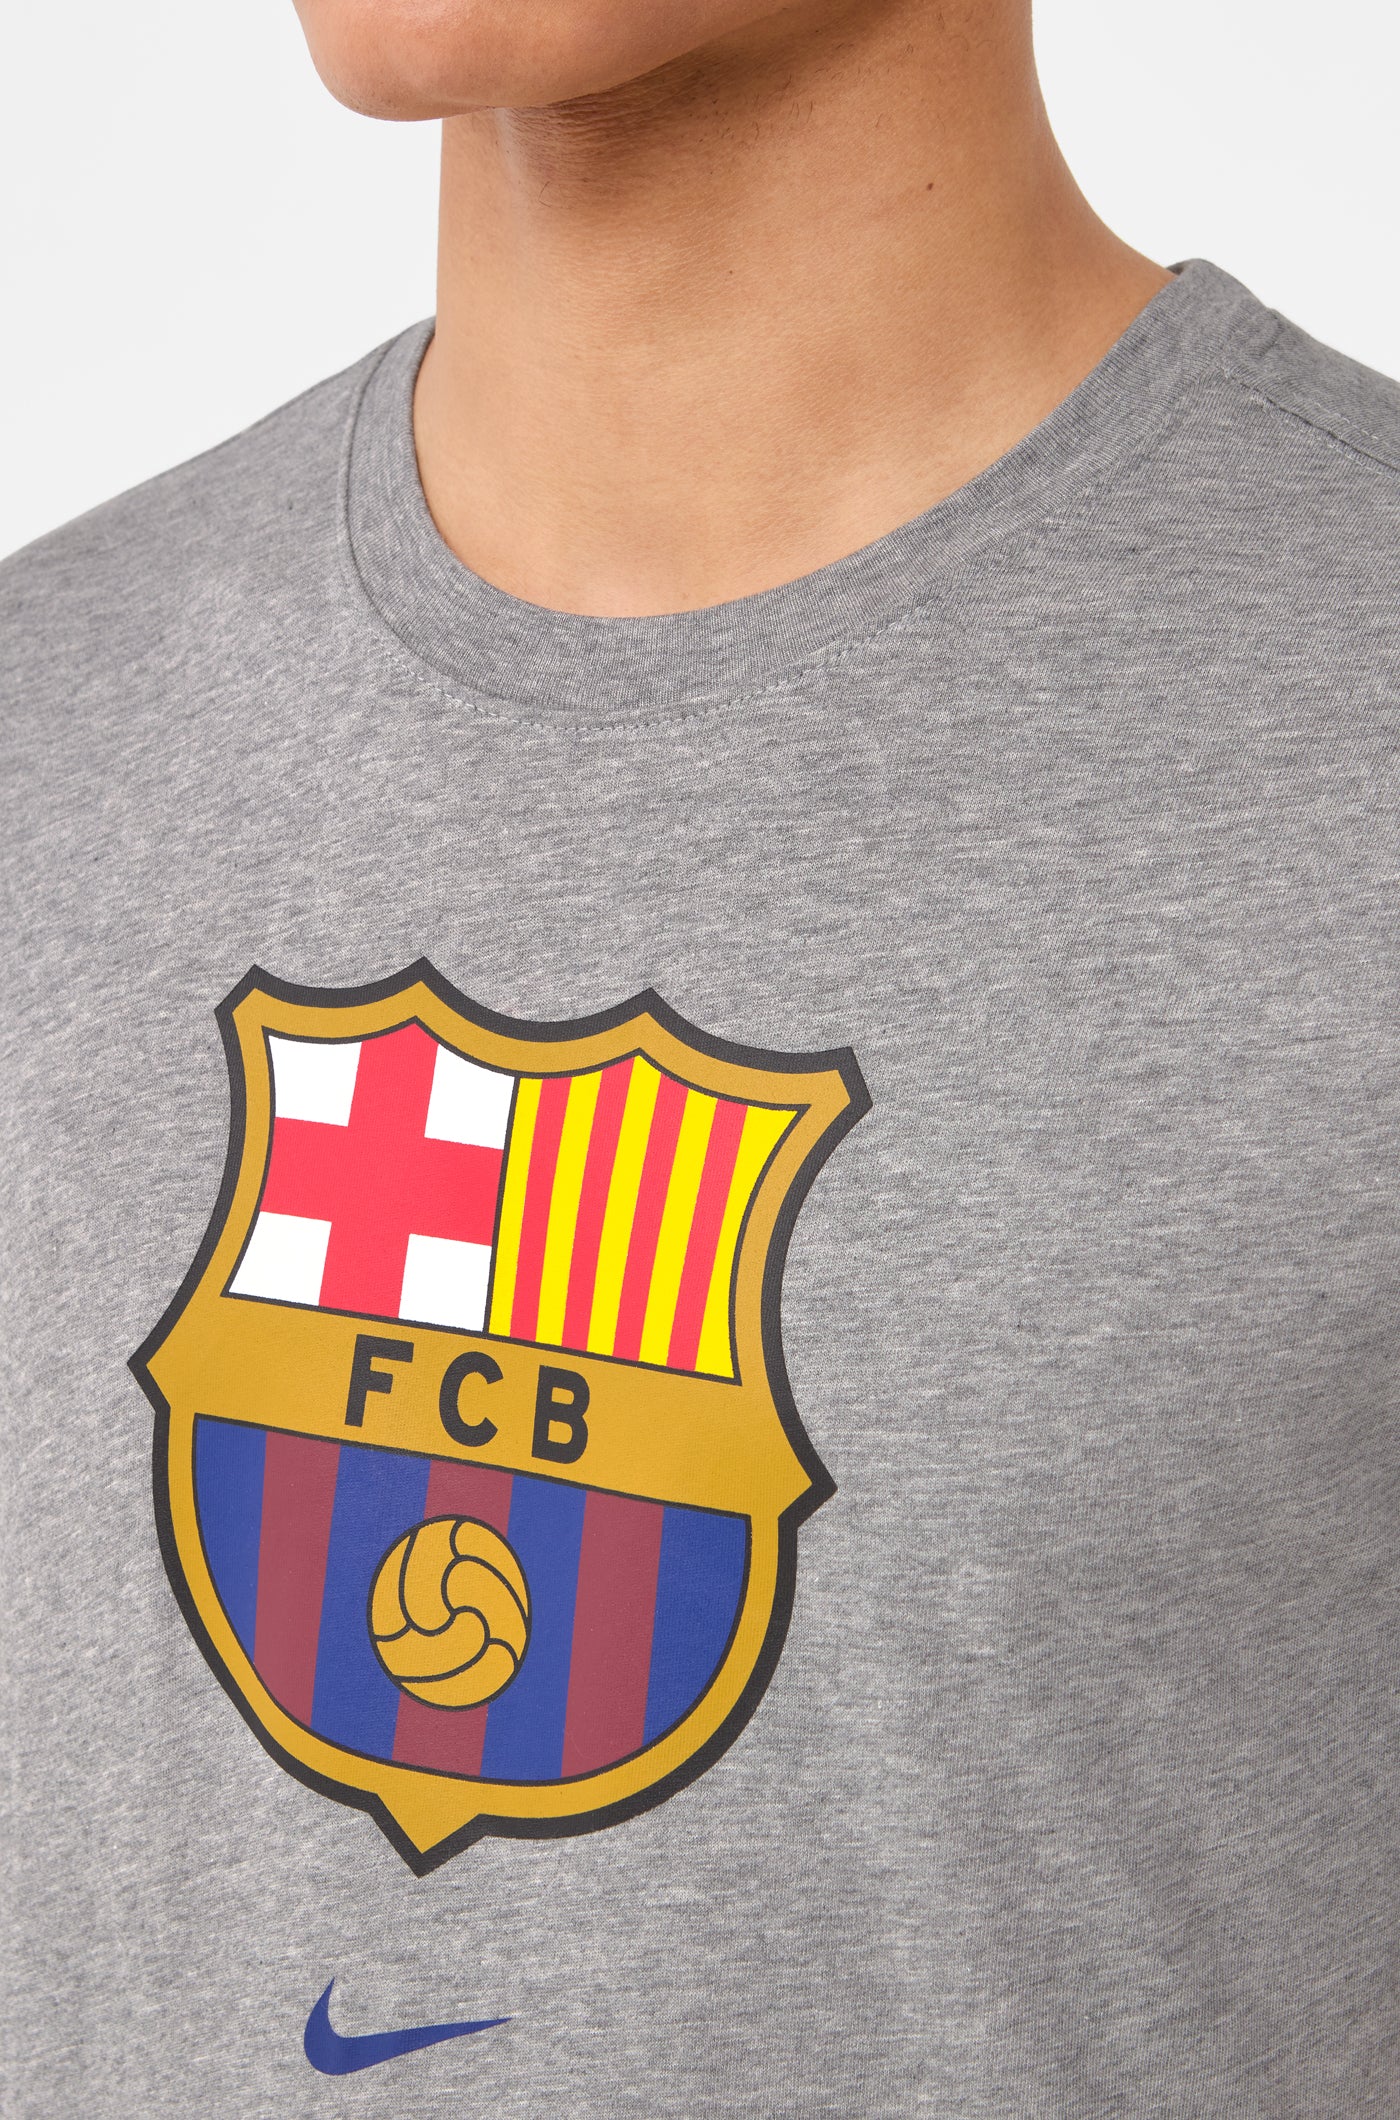 Camiseta gris escudo Barça Nike – Barça Official Store Spotify Camp Nou